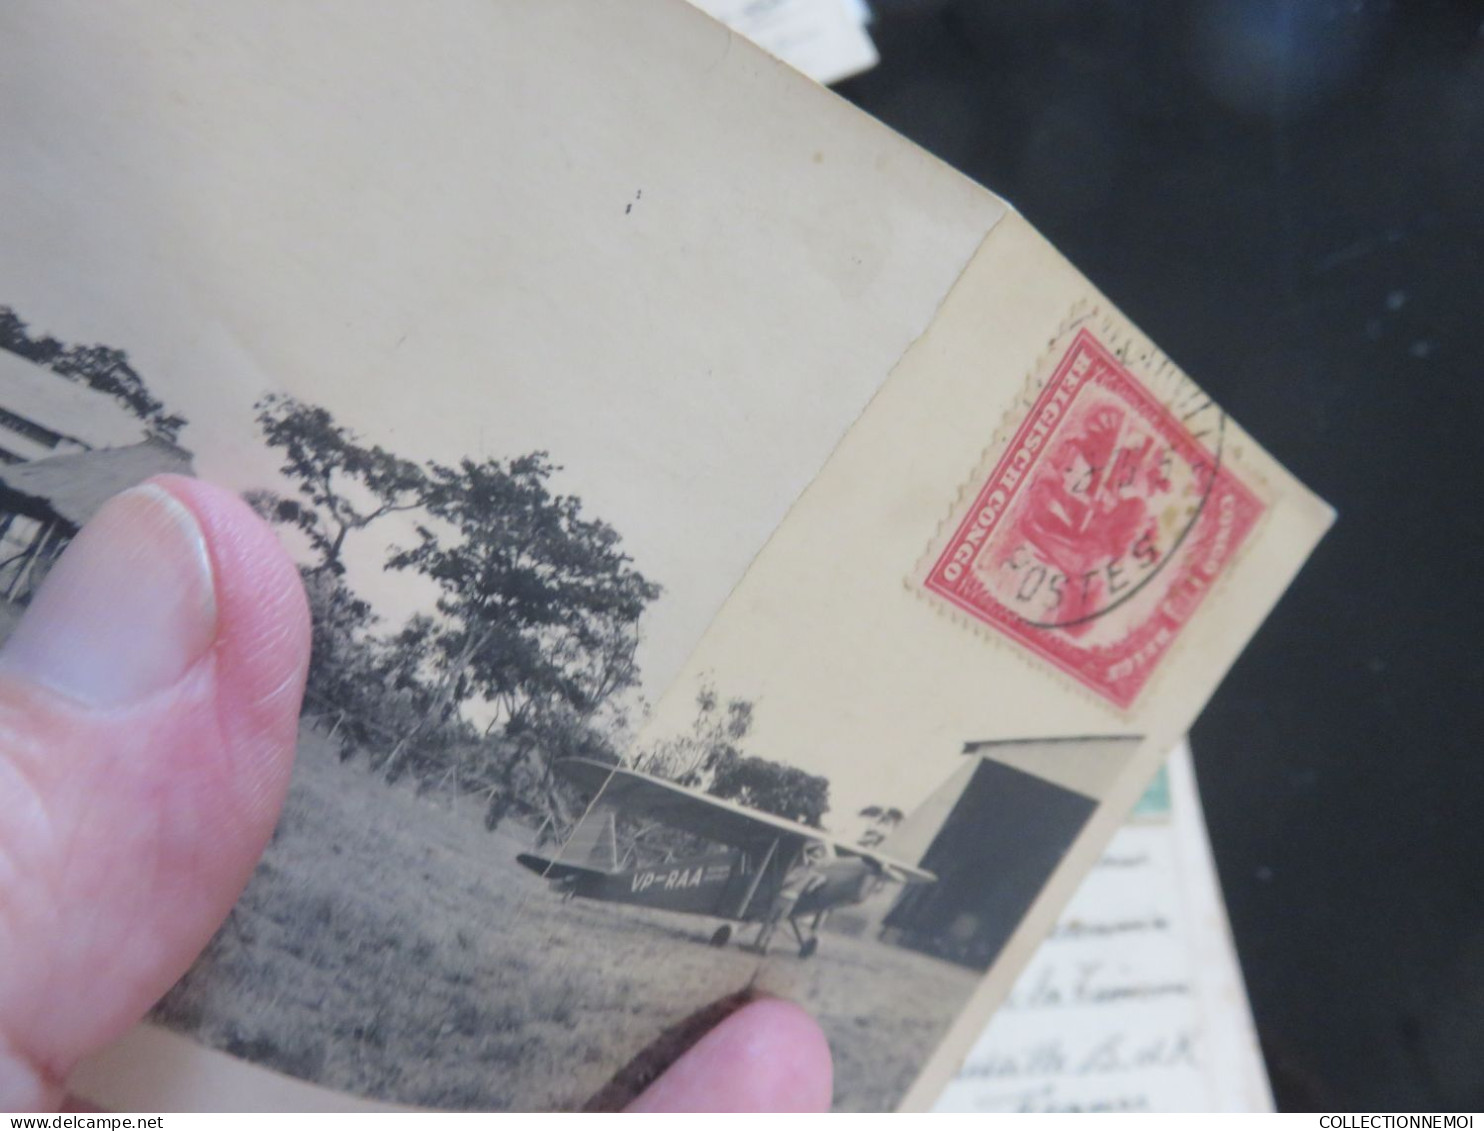 CONGO BELGE ,,,,,LOT DE cartes postales  A VOIR ET ETUDIER ,,,,plus timbres et oblitérations,,,, PRIX DERISOIRE